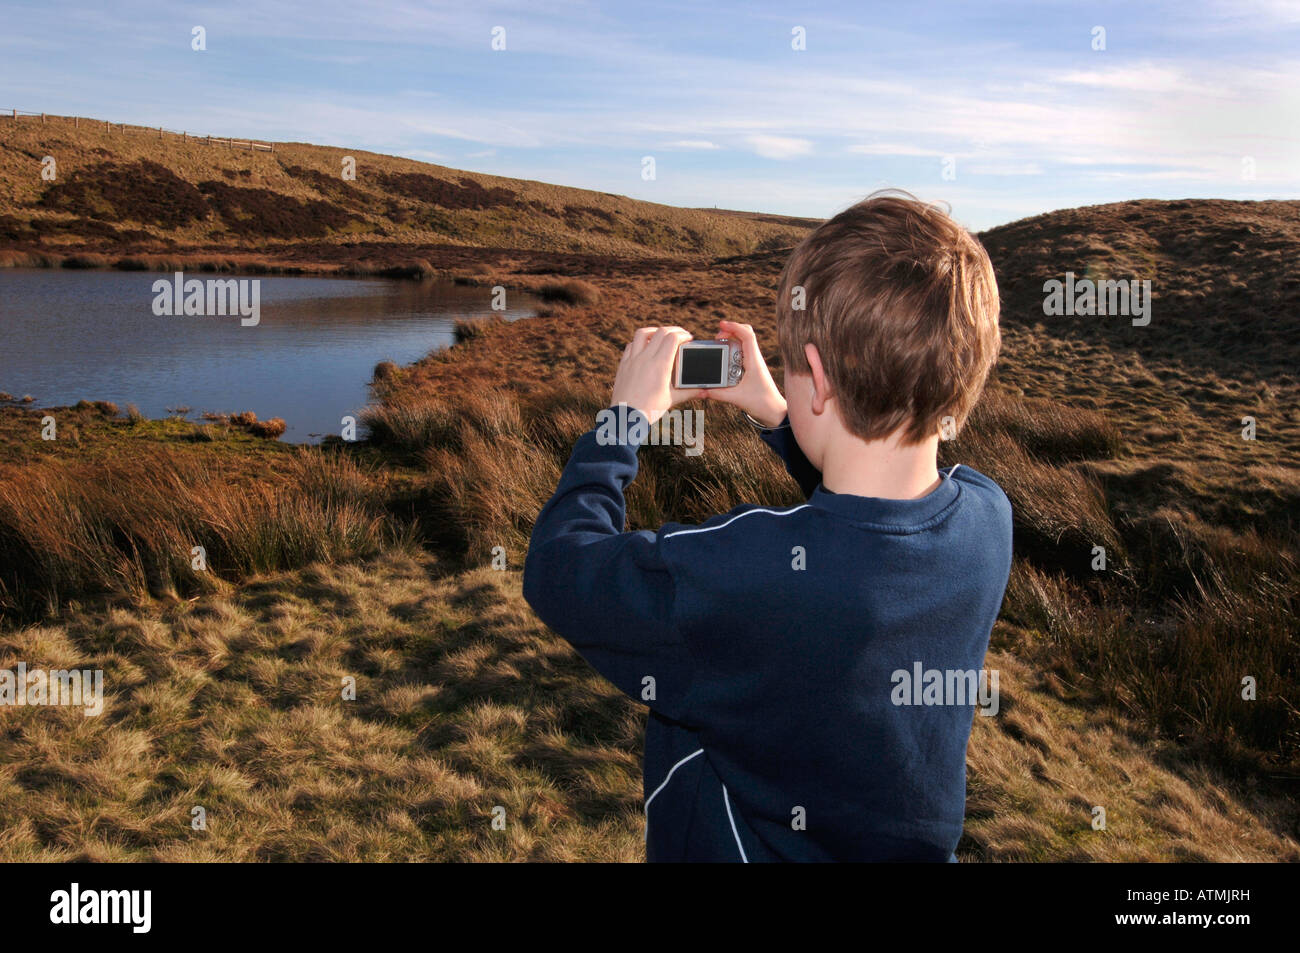 Un garçon de 13 ans à l'aide d'un appareil photo numérique, sur le Staffordshire Moorlands. Banque D'Images